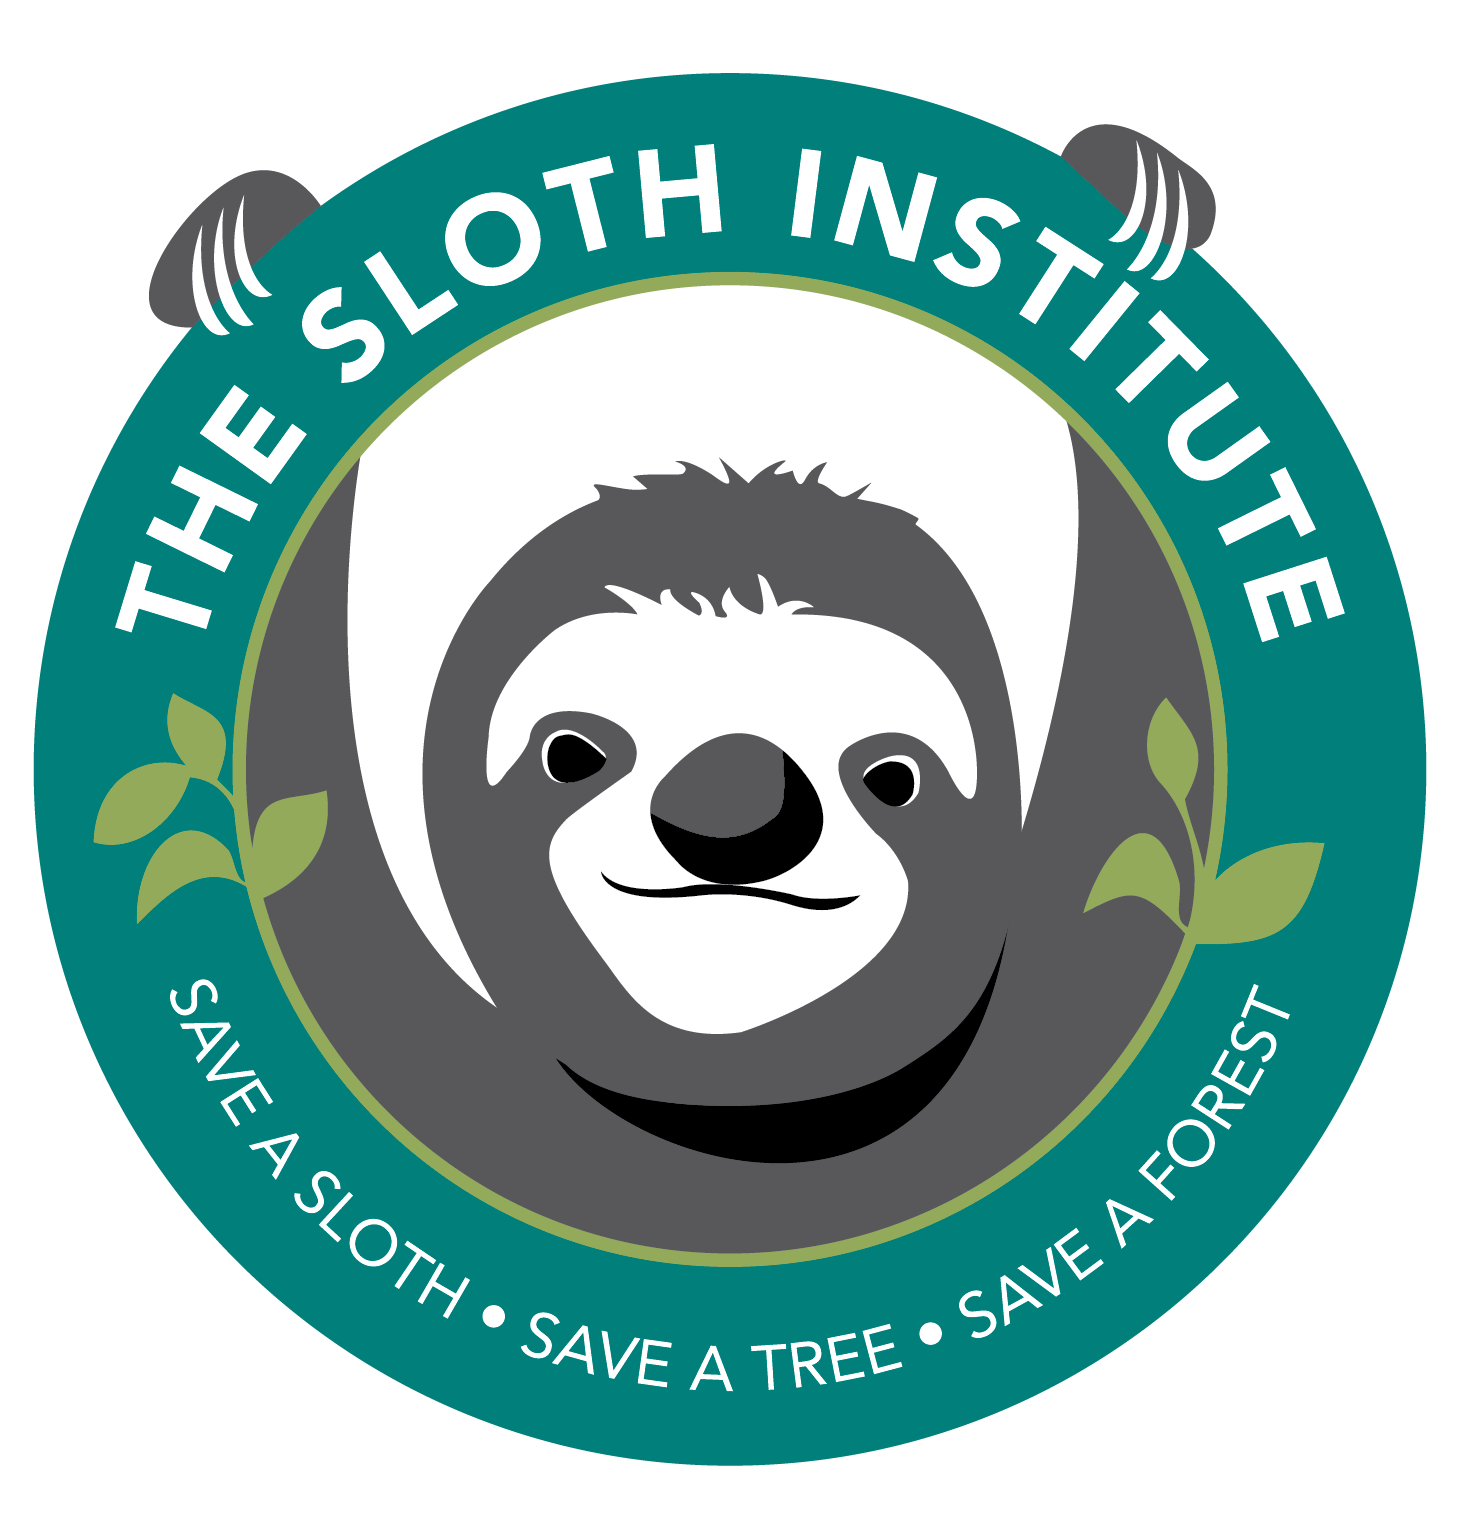 The Sloth Institute